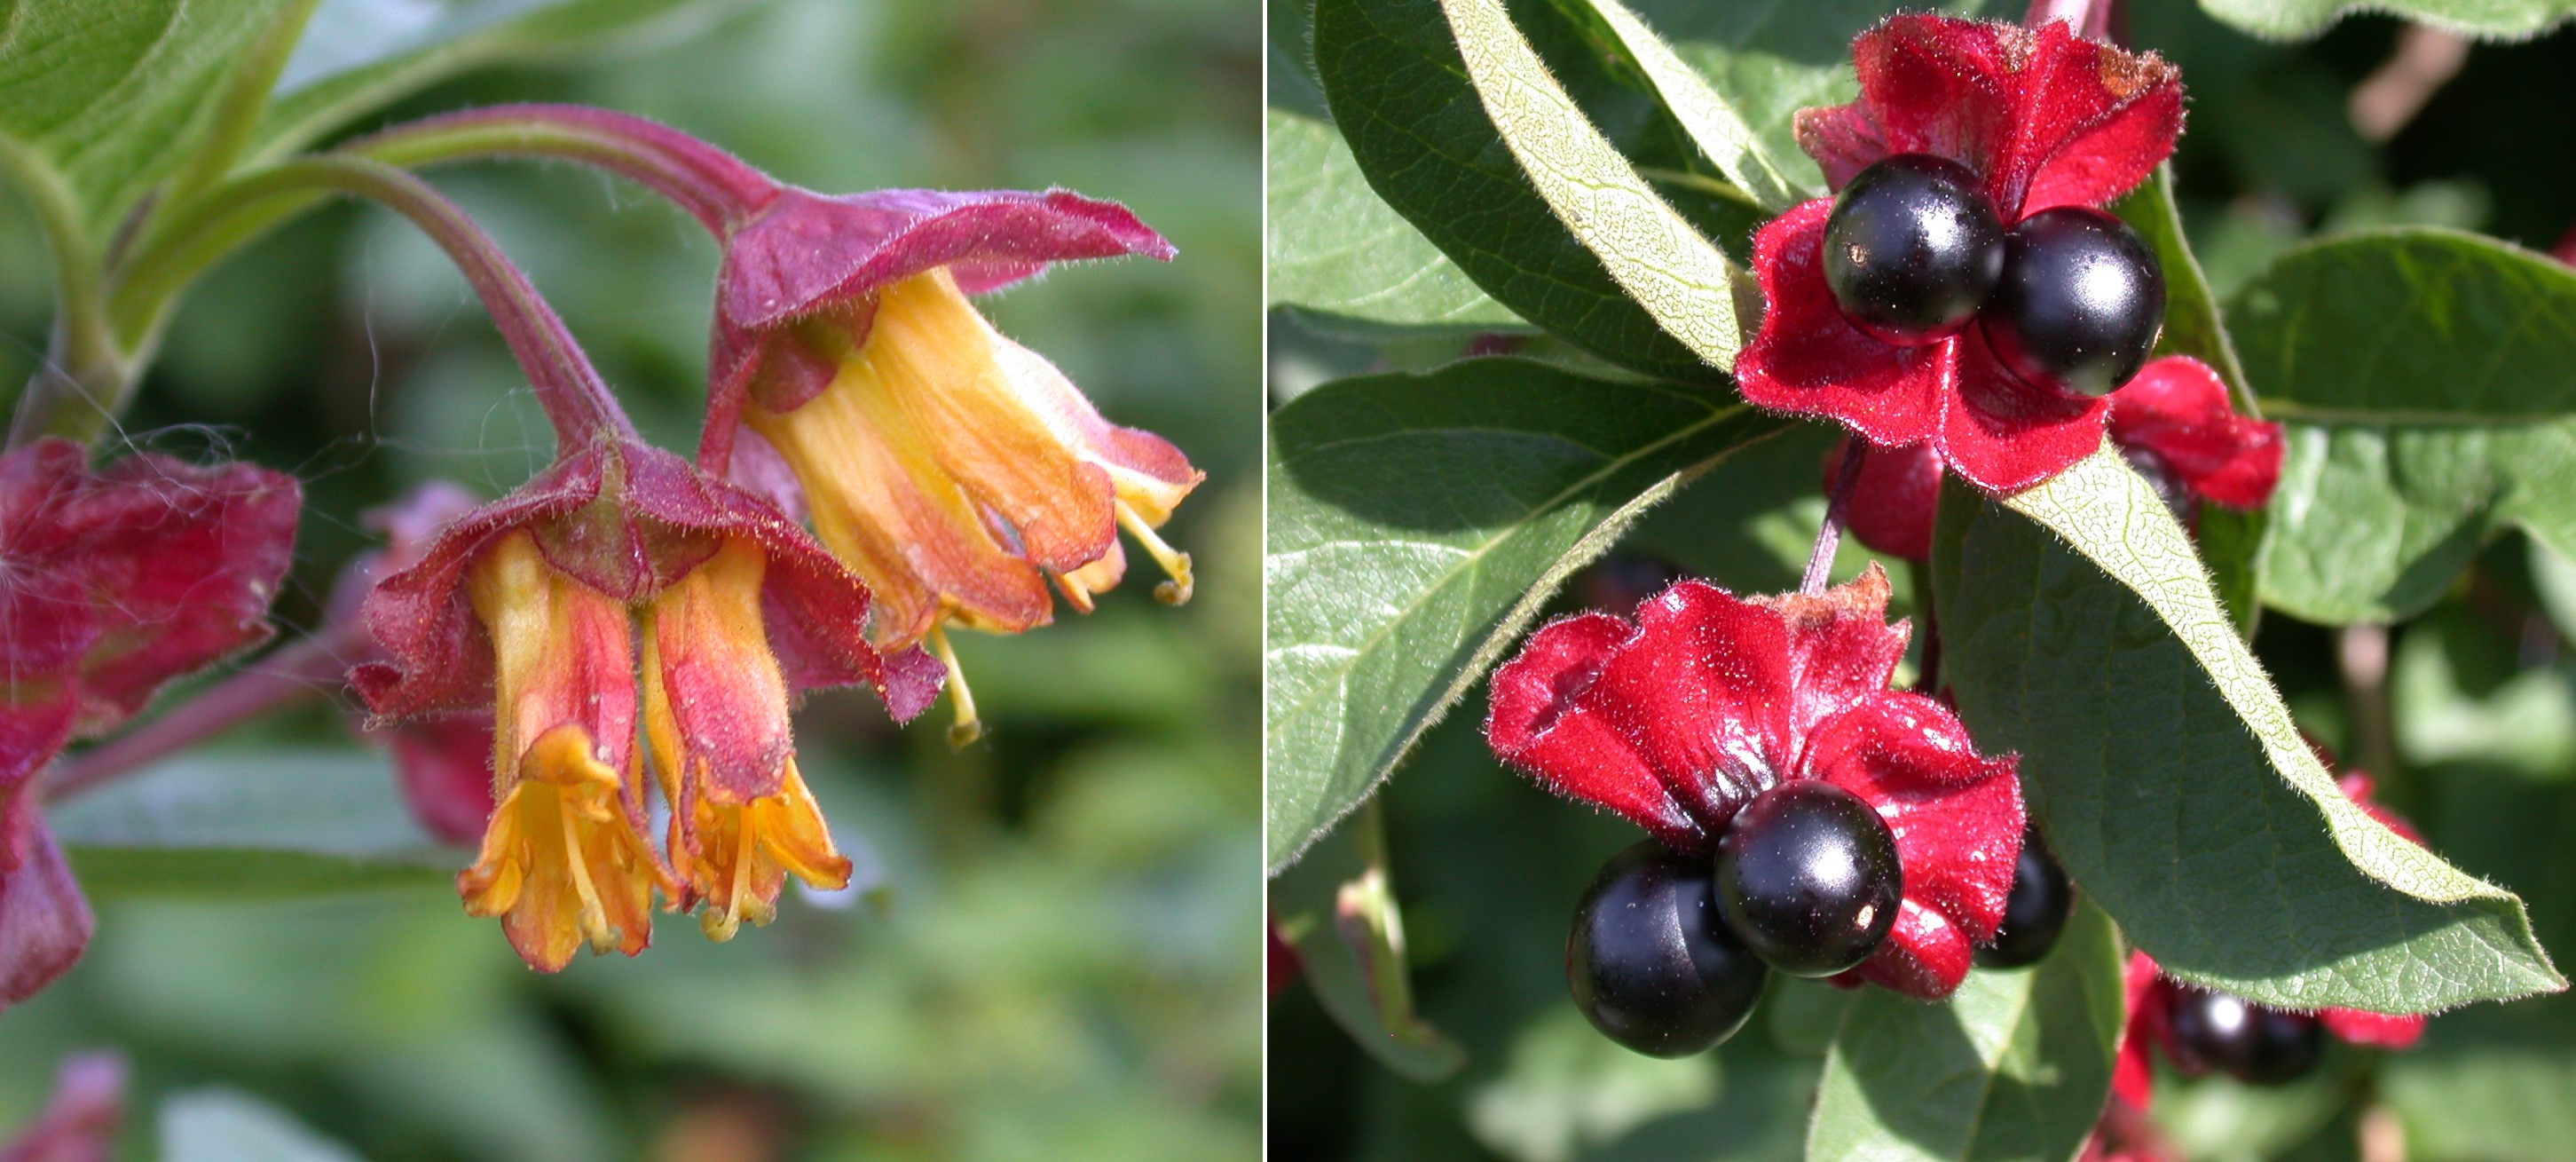 Til venstre: gule blomster med rødlilla dekkblad rett under blomsten. Til høyre: sorte bær i par med rødlilla dekkblad.